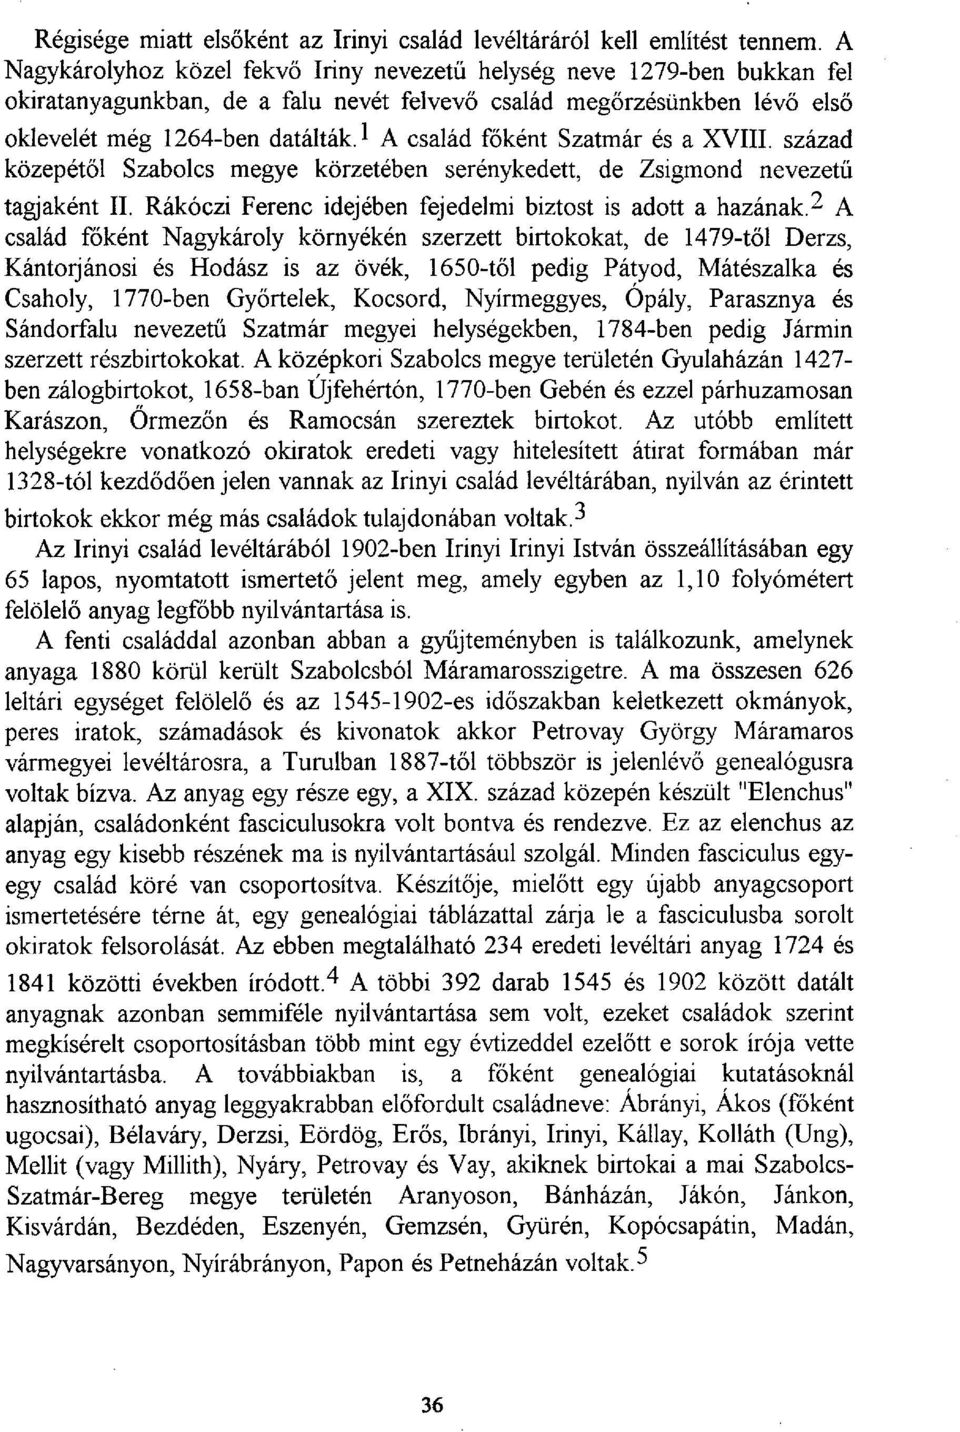 1 A család főként Szatmár és a XVIII. század közepétől Szabolcs megye körzetében serénykedett, de Zsigmond nevezetű tagjaként II. Rákóczi Ferenc idejében fejedelmi biztost is adott a hazának.